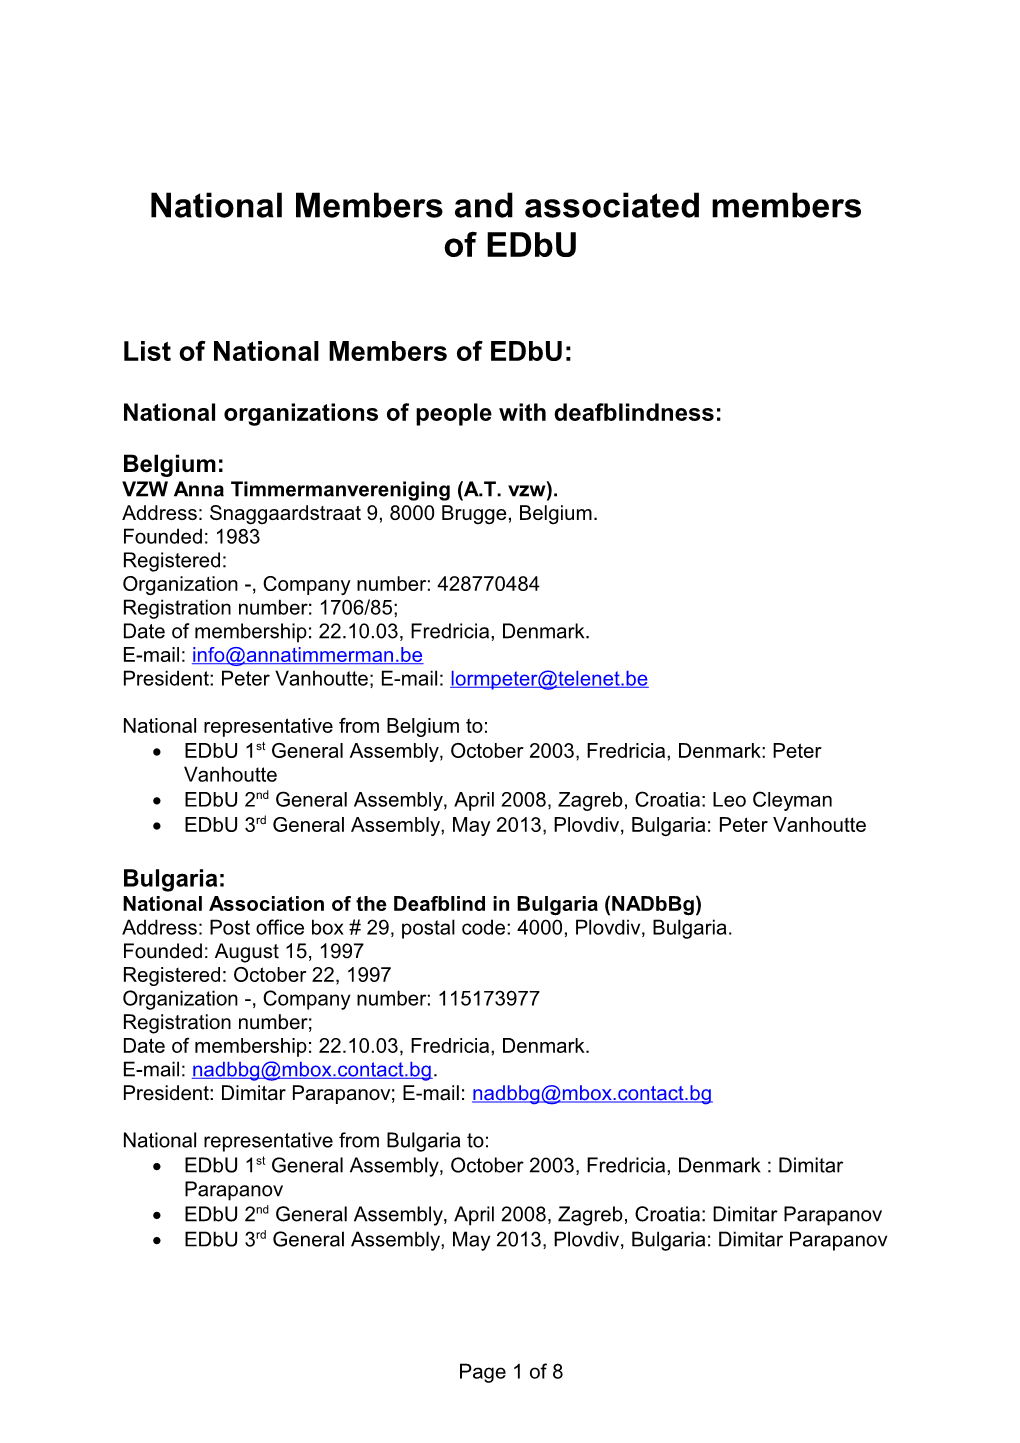 17 National Members of EDBU